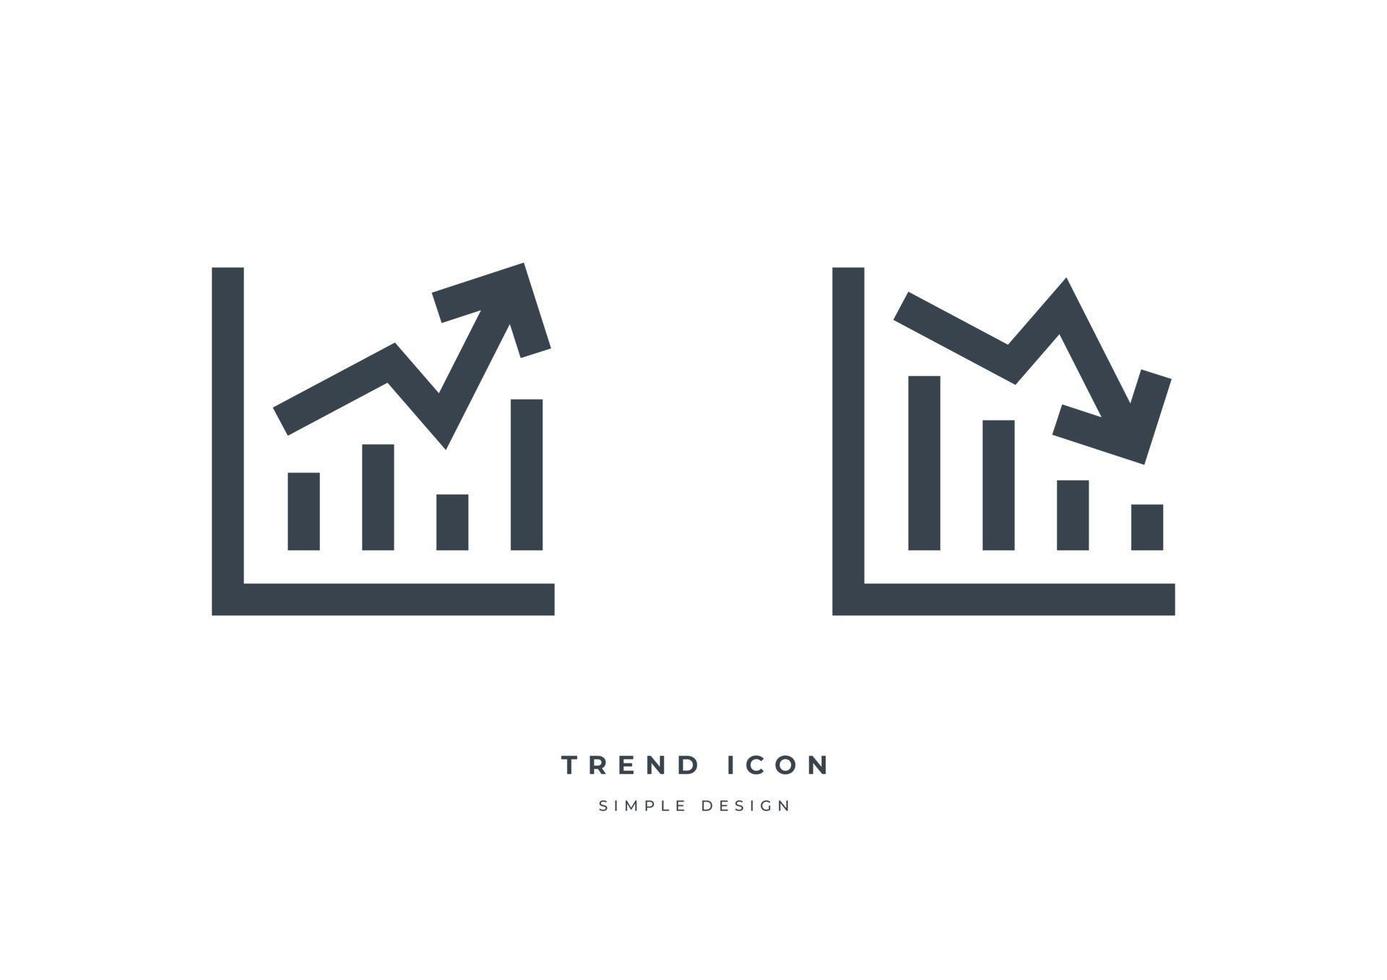 Geschäftsmarkt-Trendgraphikikone lokalisiert auf weißem Hintergrund vektor